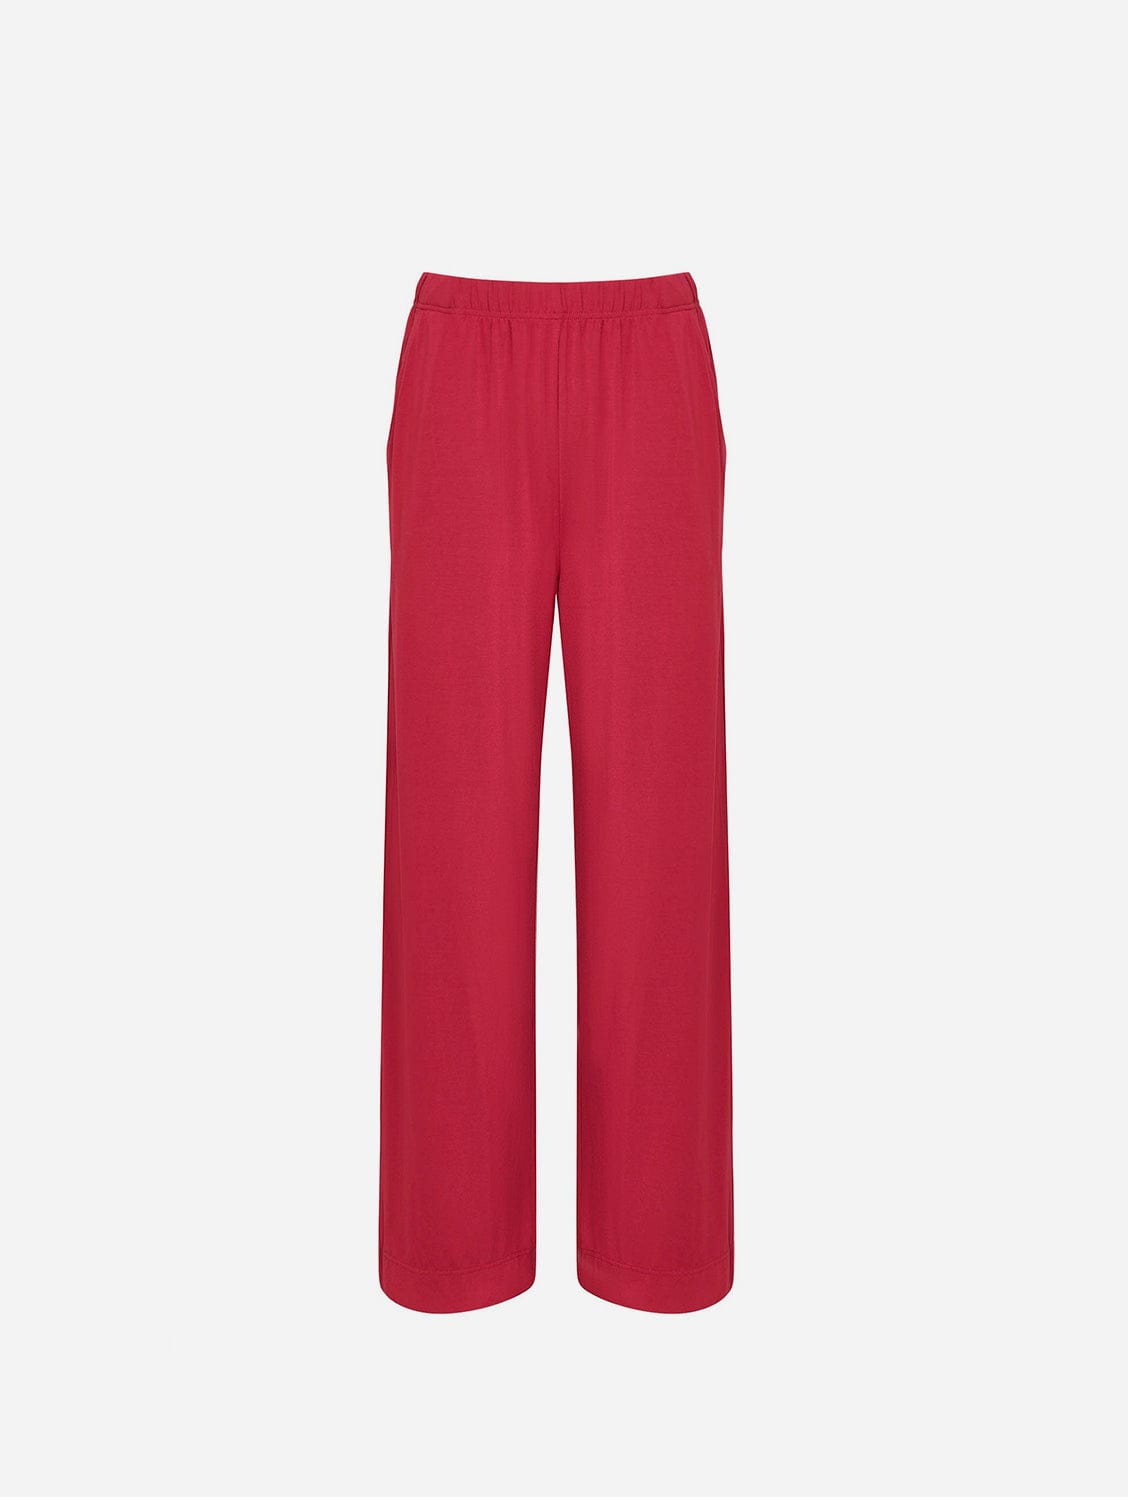 KOMODO BINITA - Lenzing Pink Trousers SIZE 1 / UK 8 / EUR 36